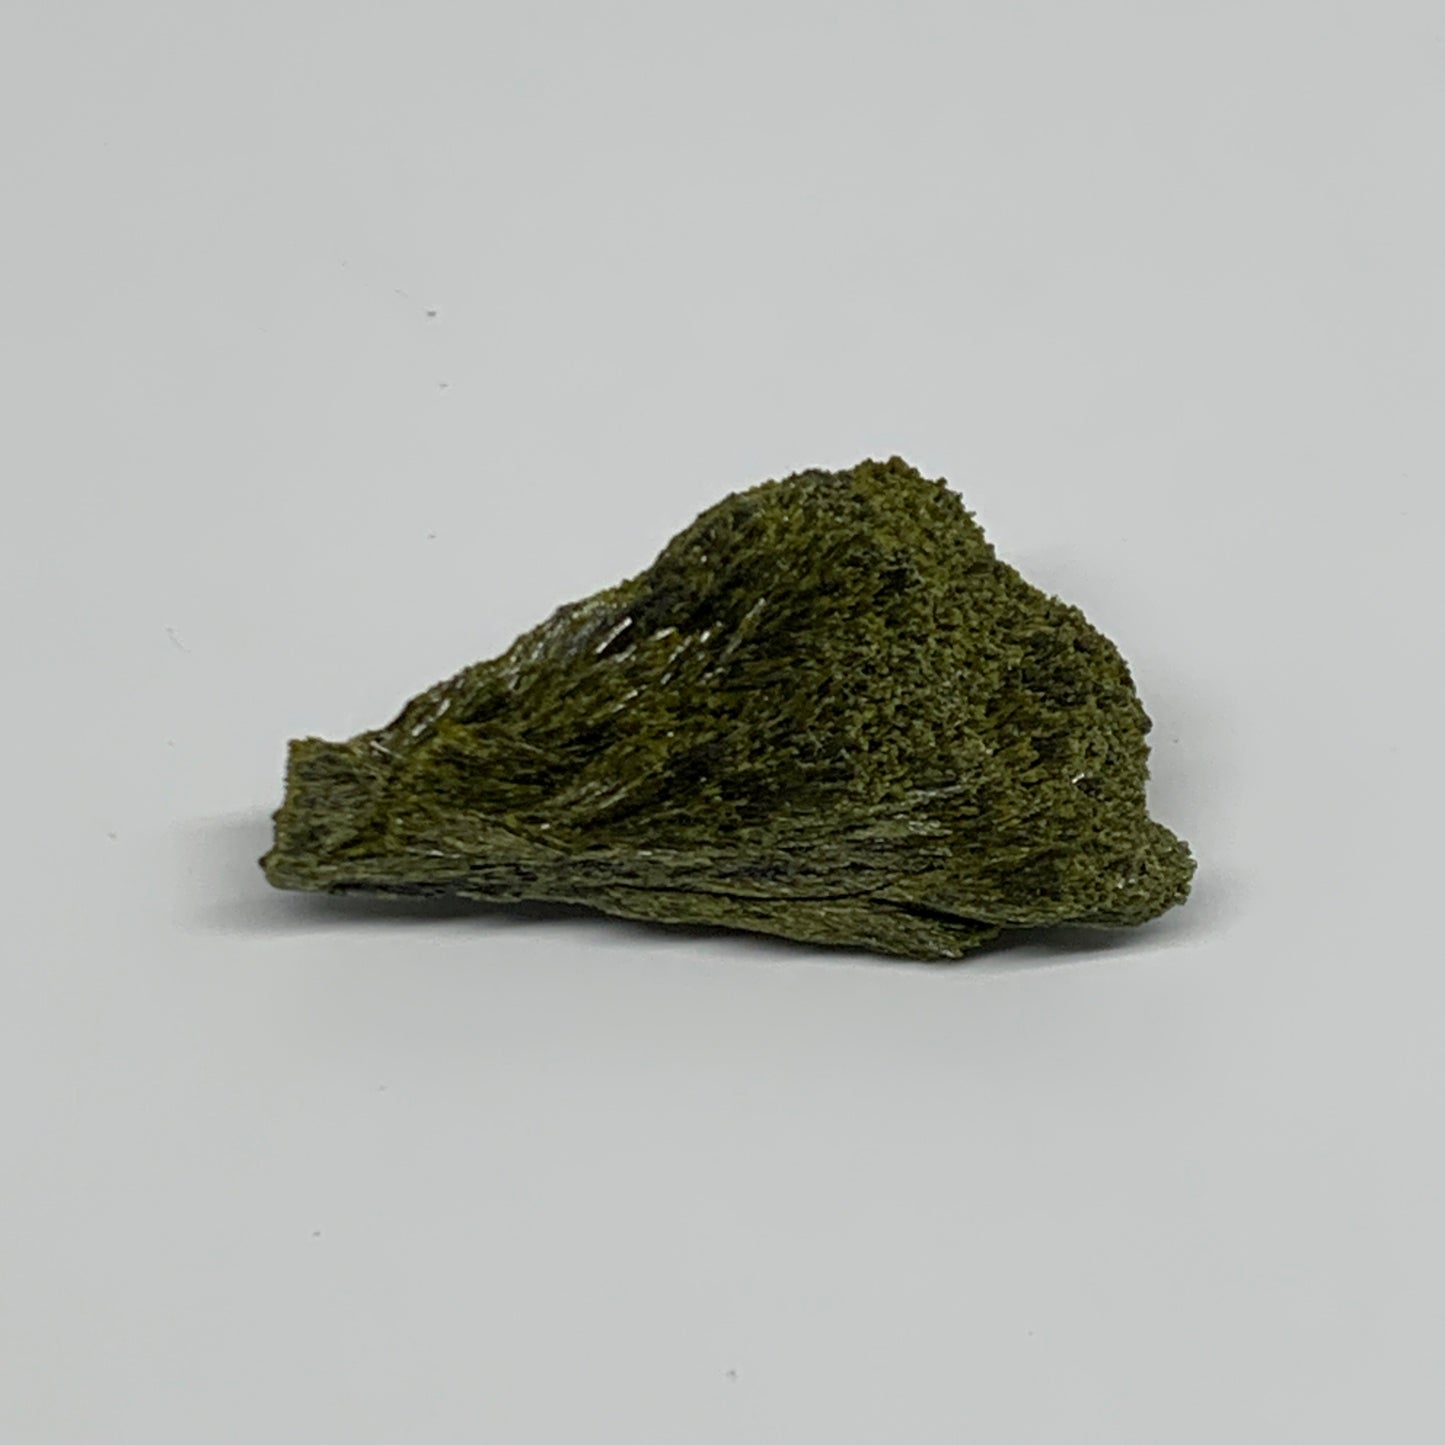 55.6g,2.7"x1.5"x0.8",Green Epidote Custer/Leaf Mineral Specimen @Pakistan,B27602